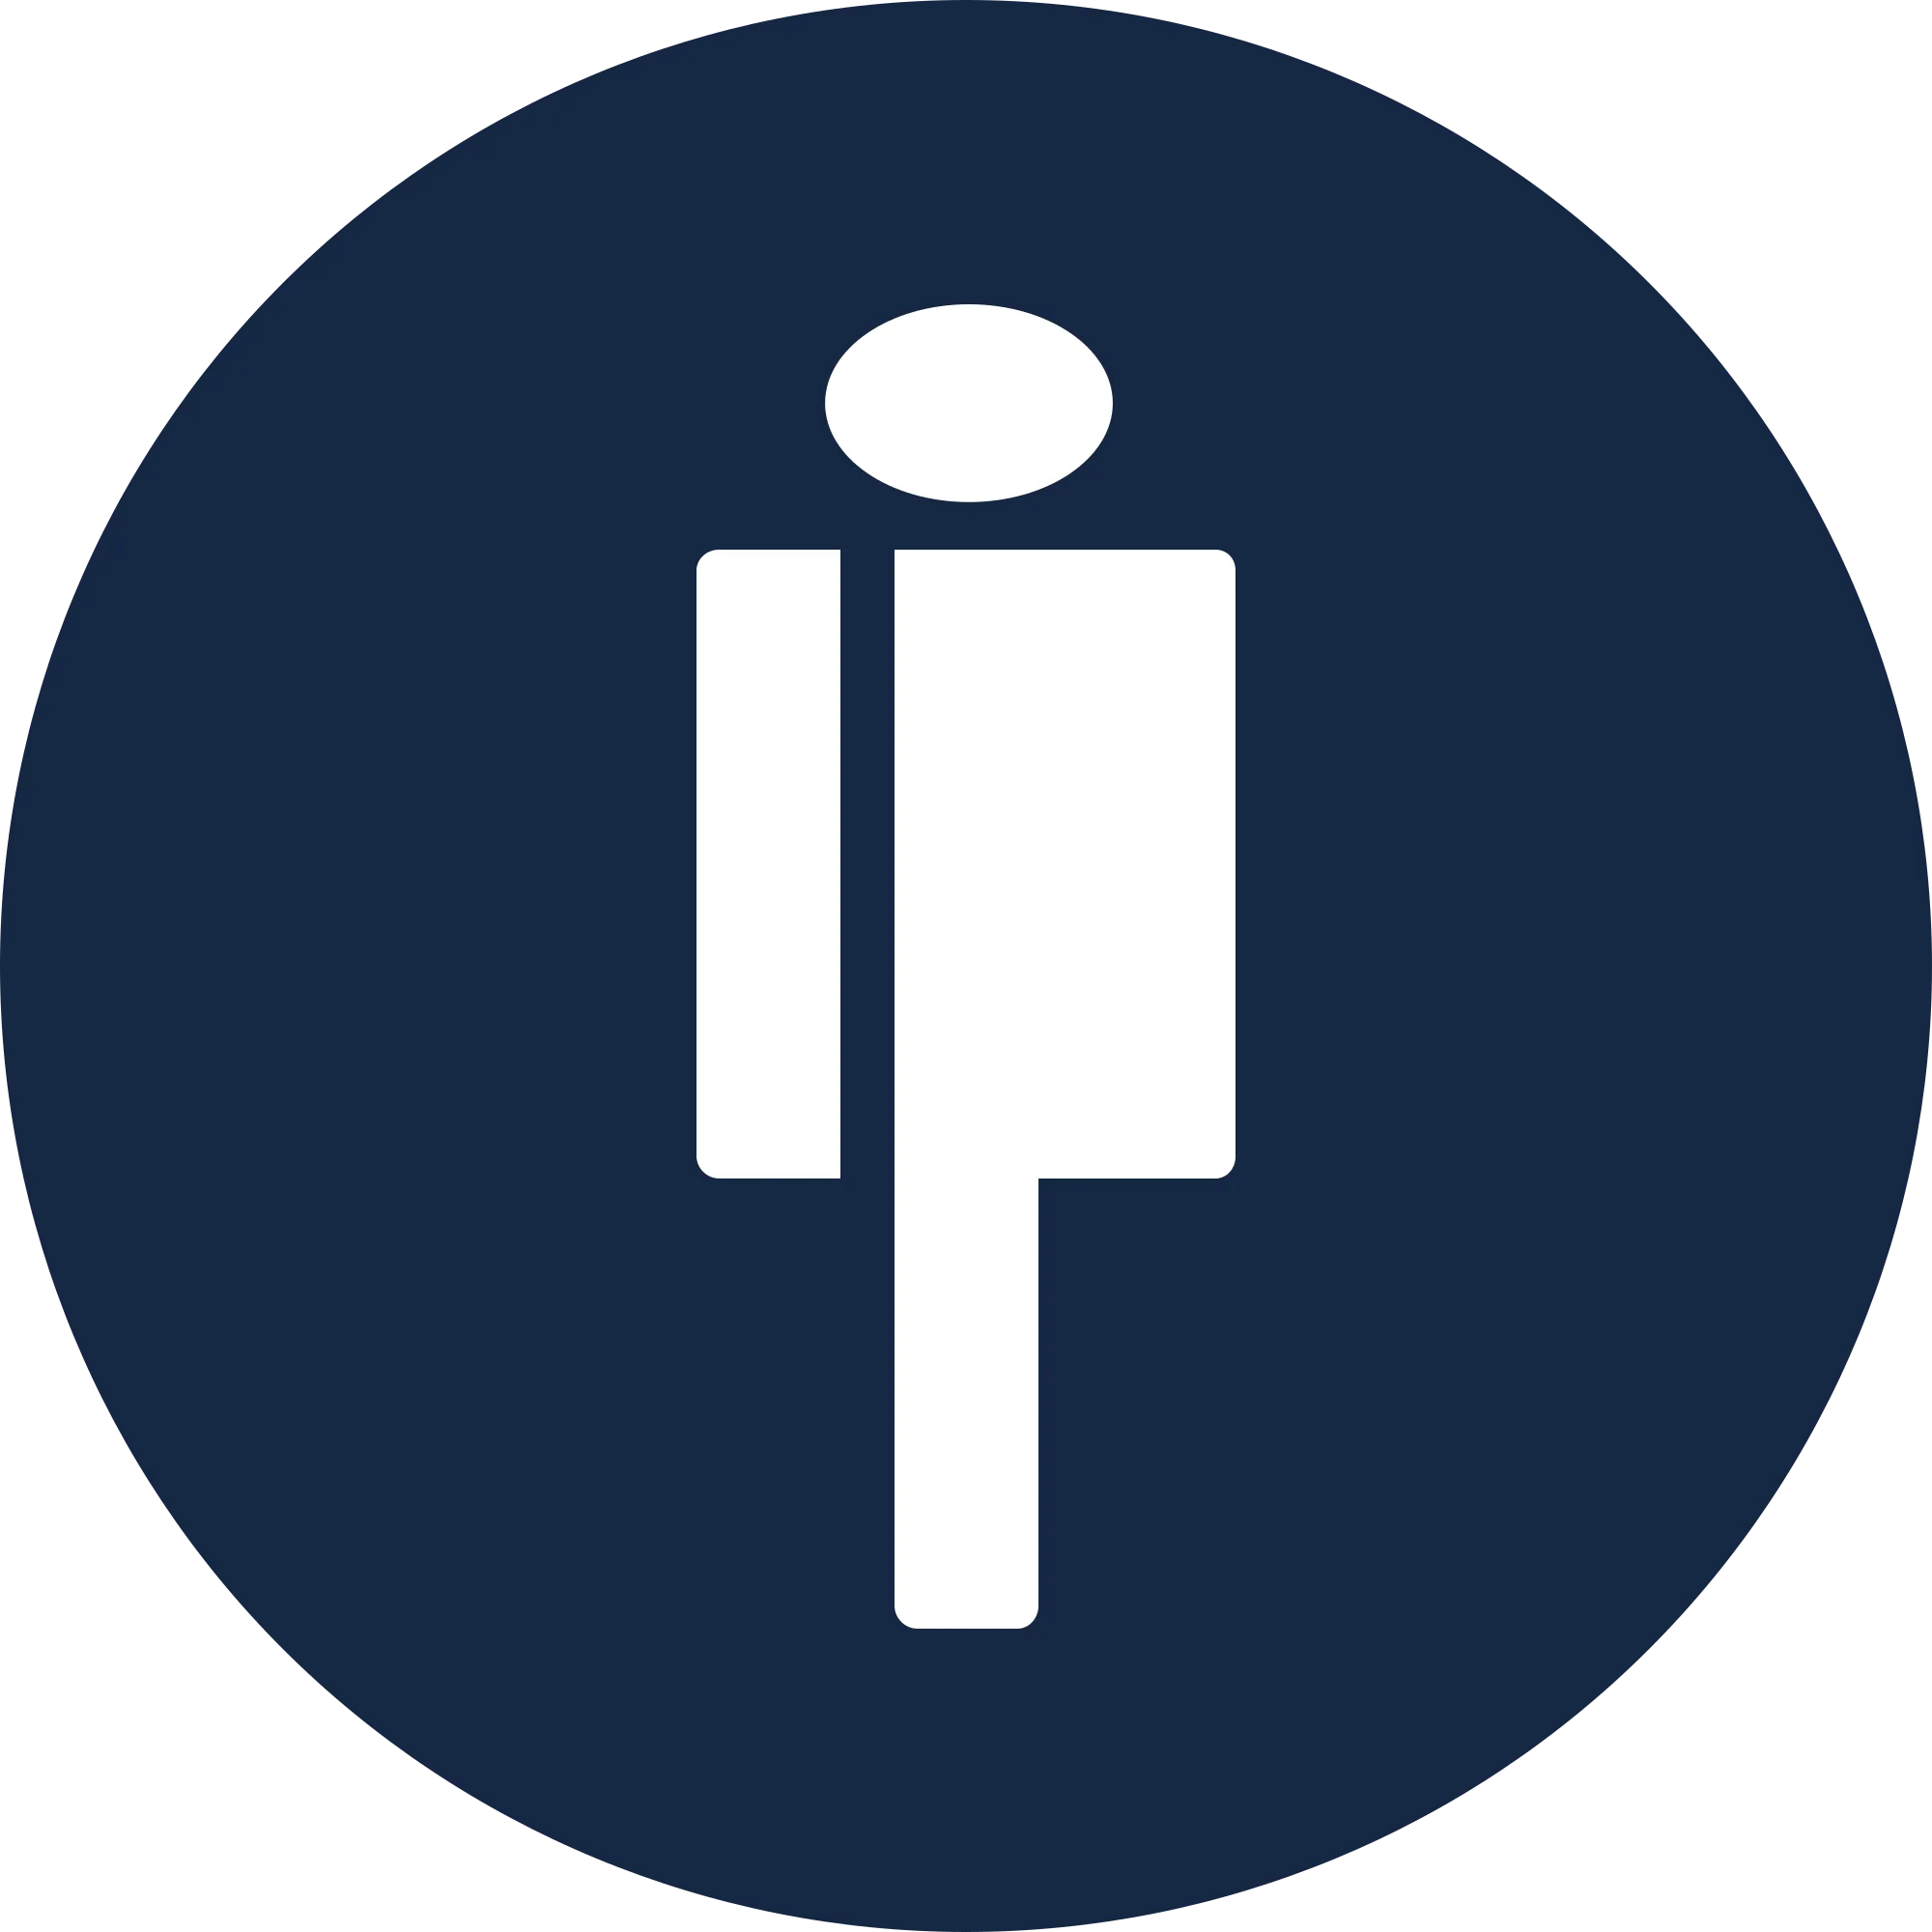 Populous (PPT) logo